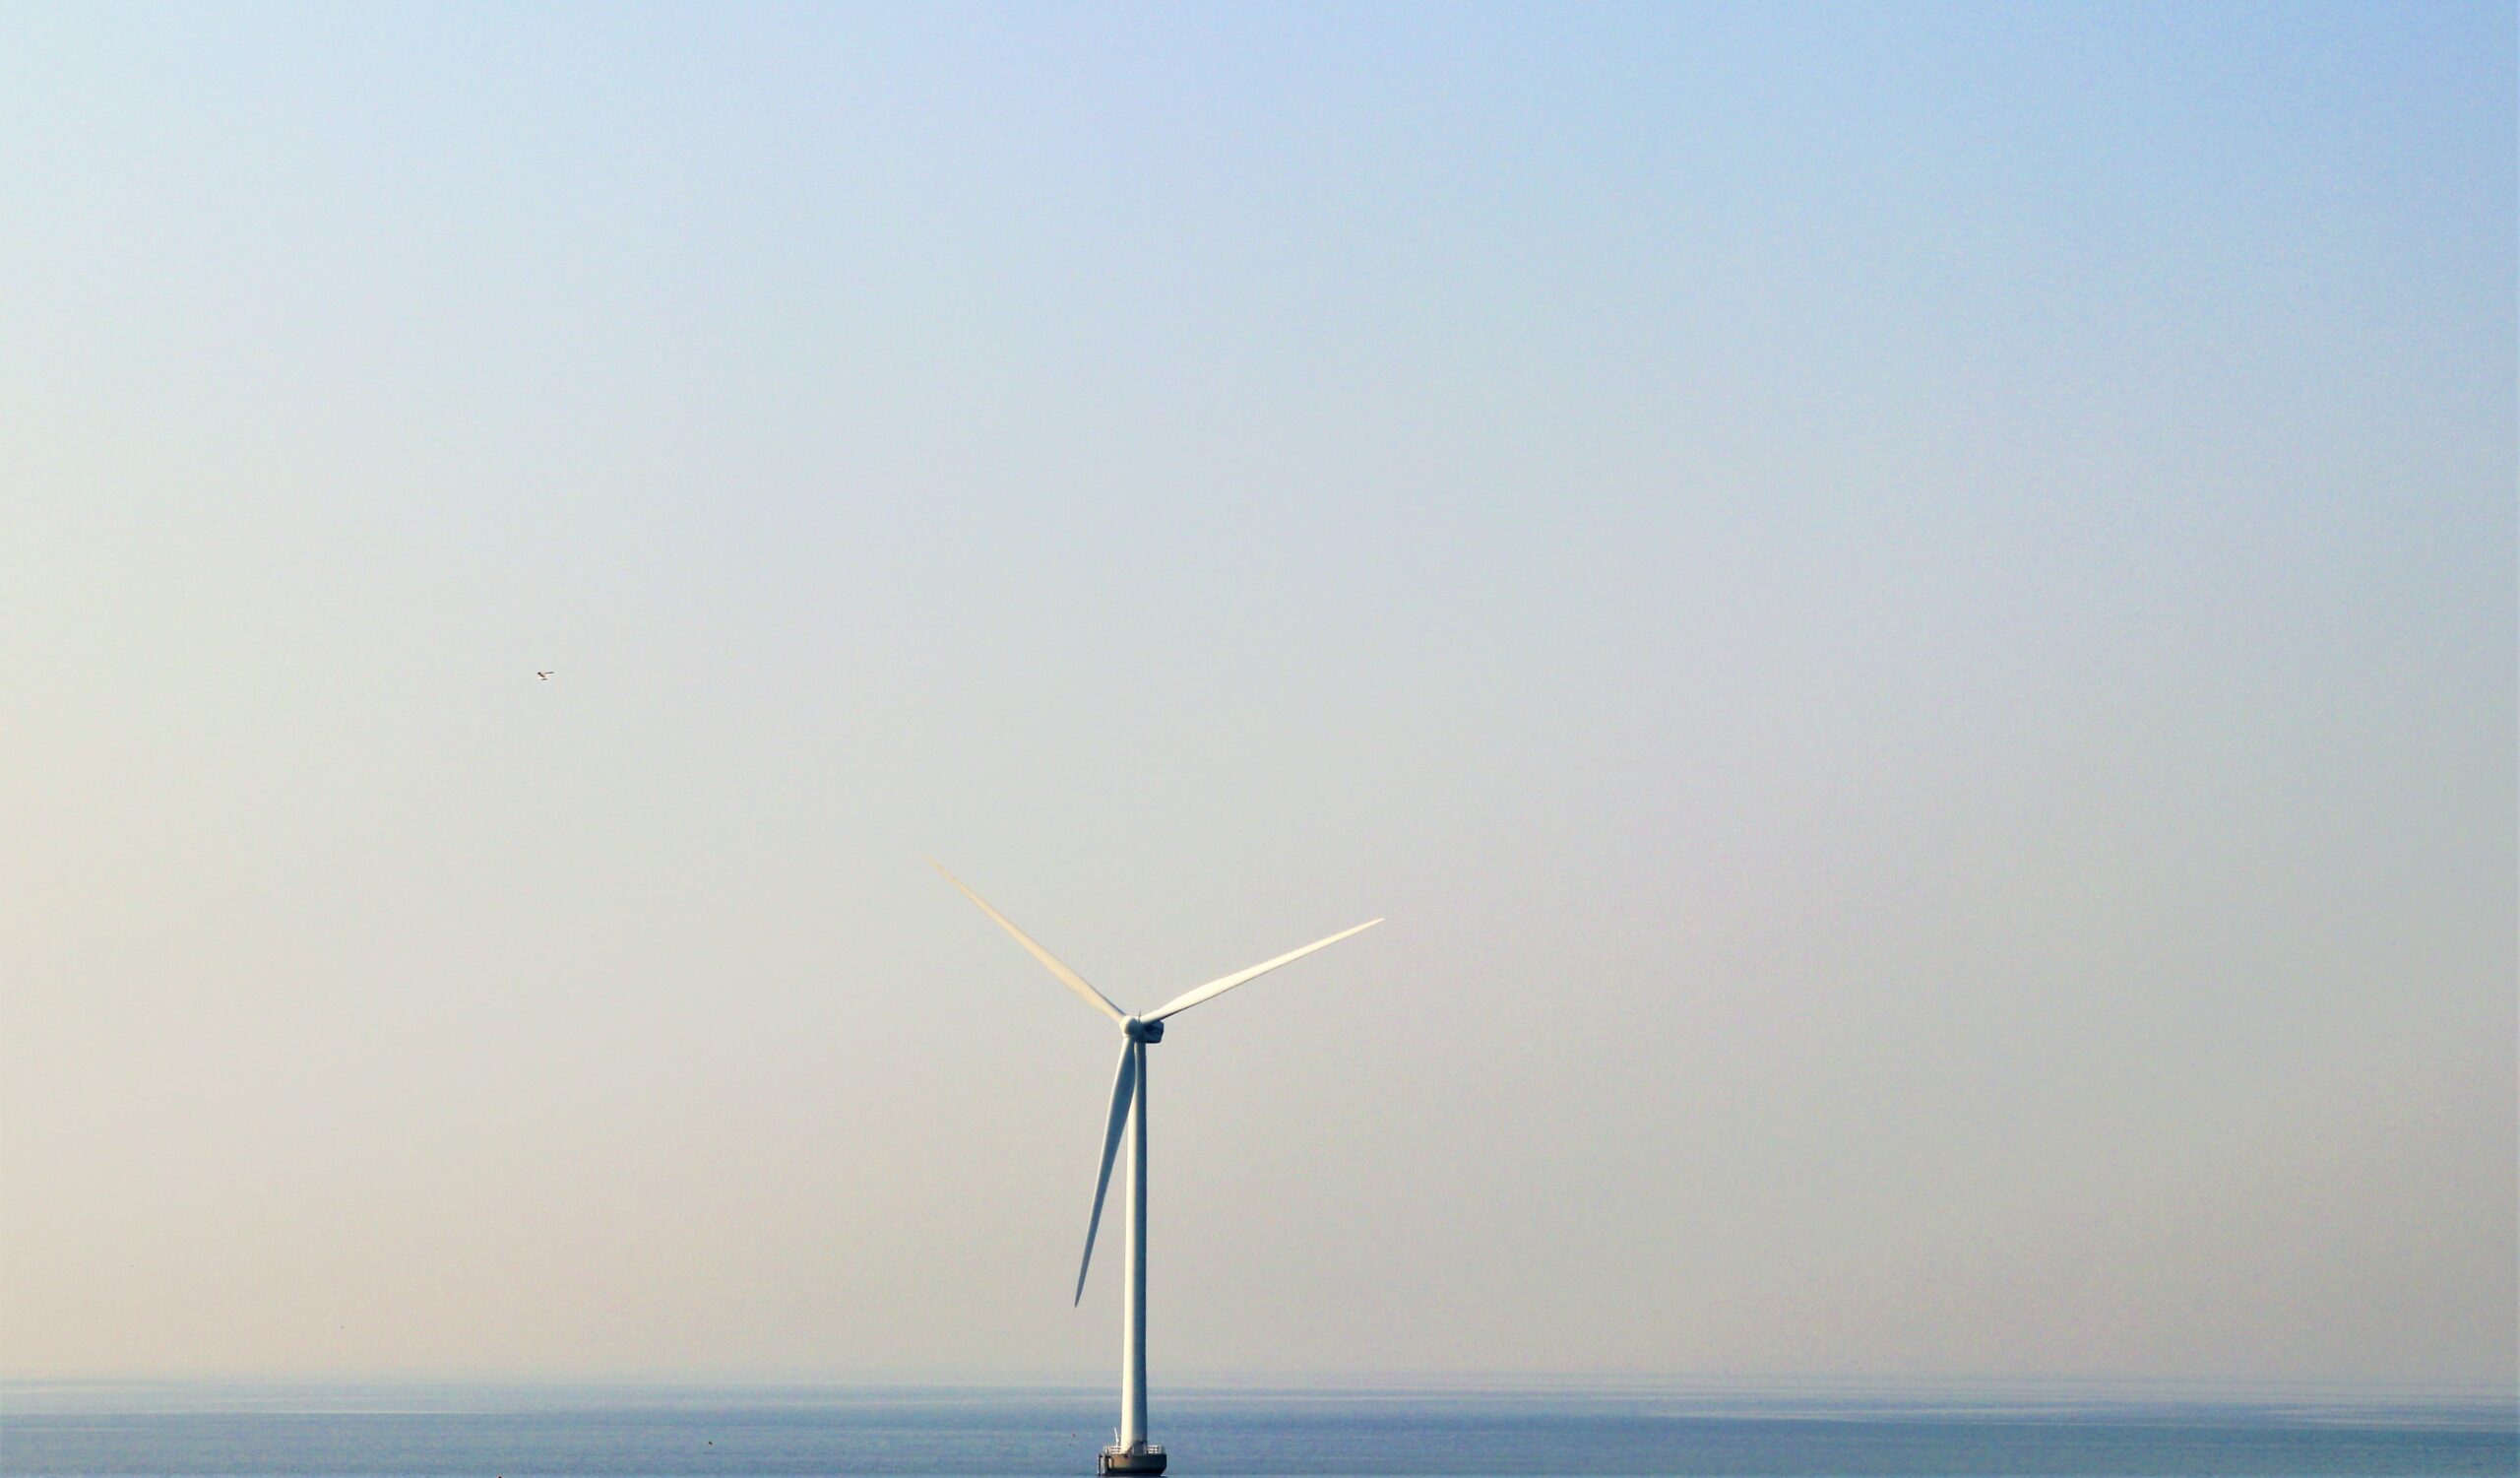 HOFOR vindmølle-projekt skaber jobs og havneudvidelse i Køge